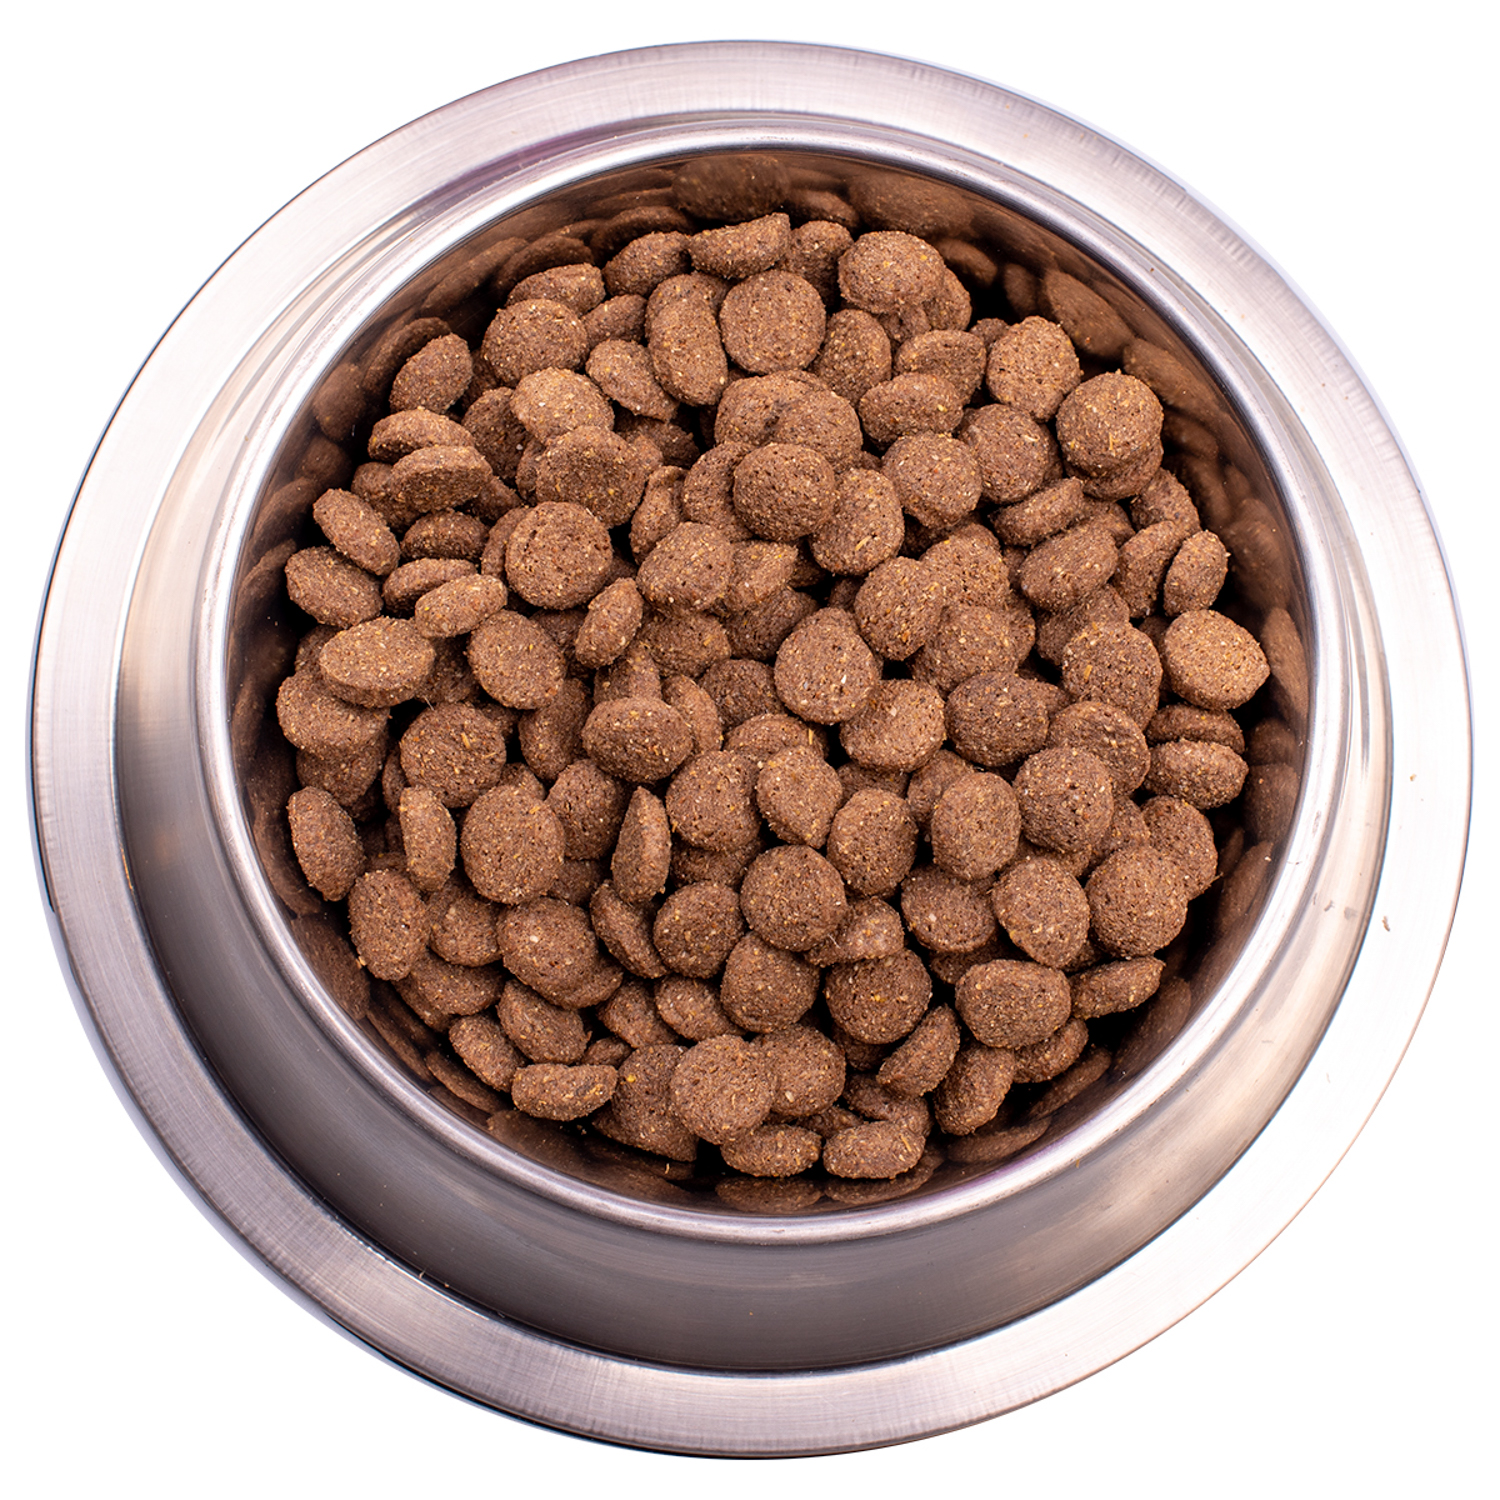 Сухой корм Gemon Dog Medium для взрослых собак средних пород, с ягненком и рисом 15 кг